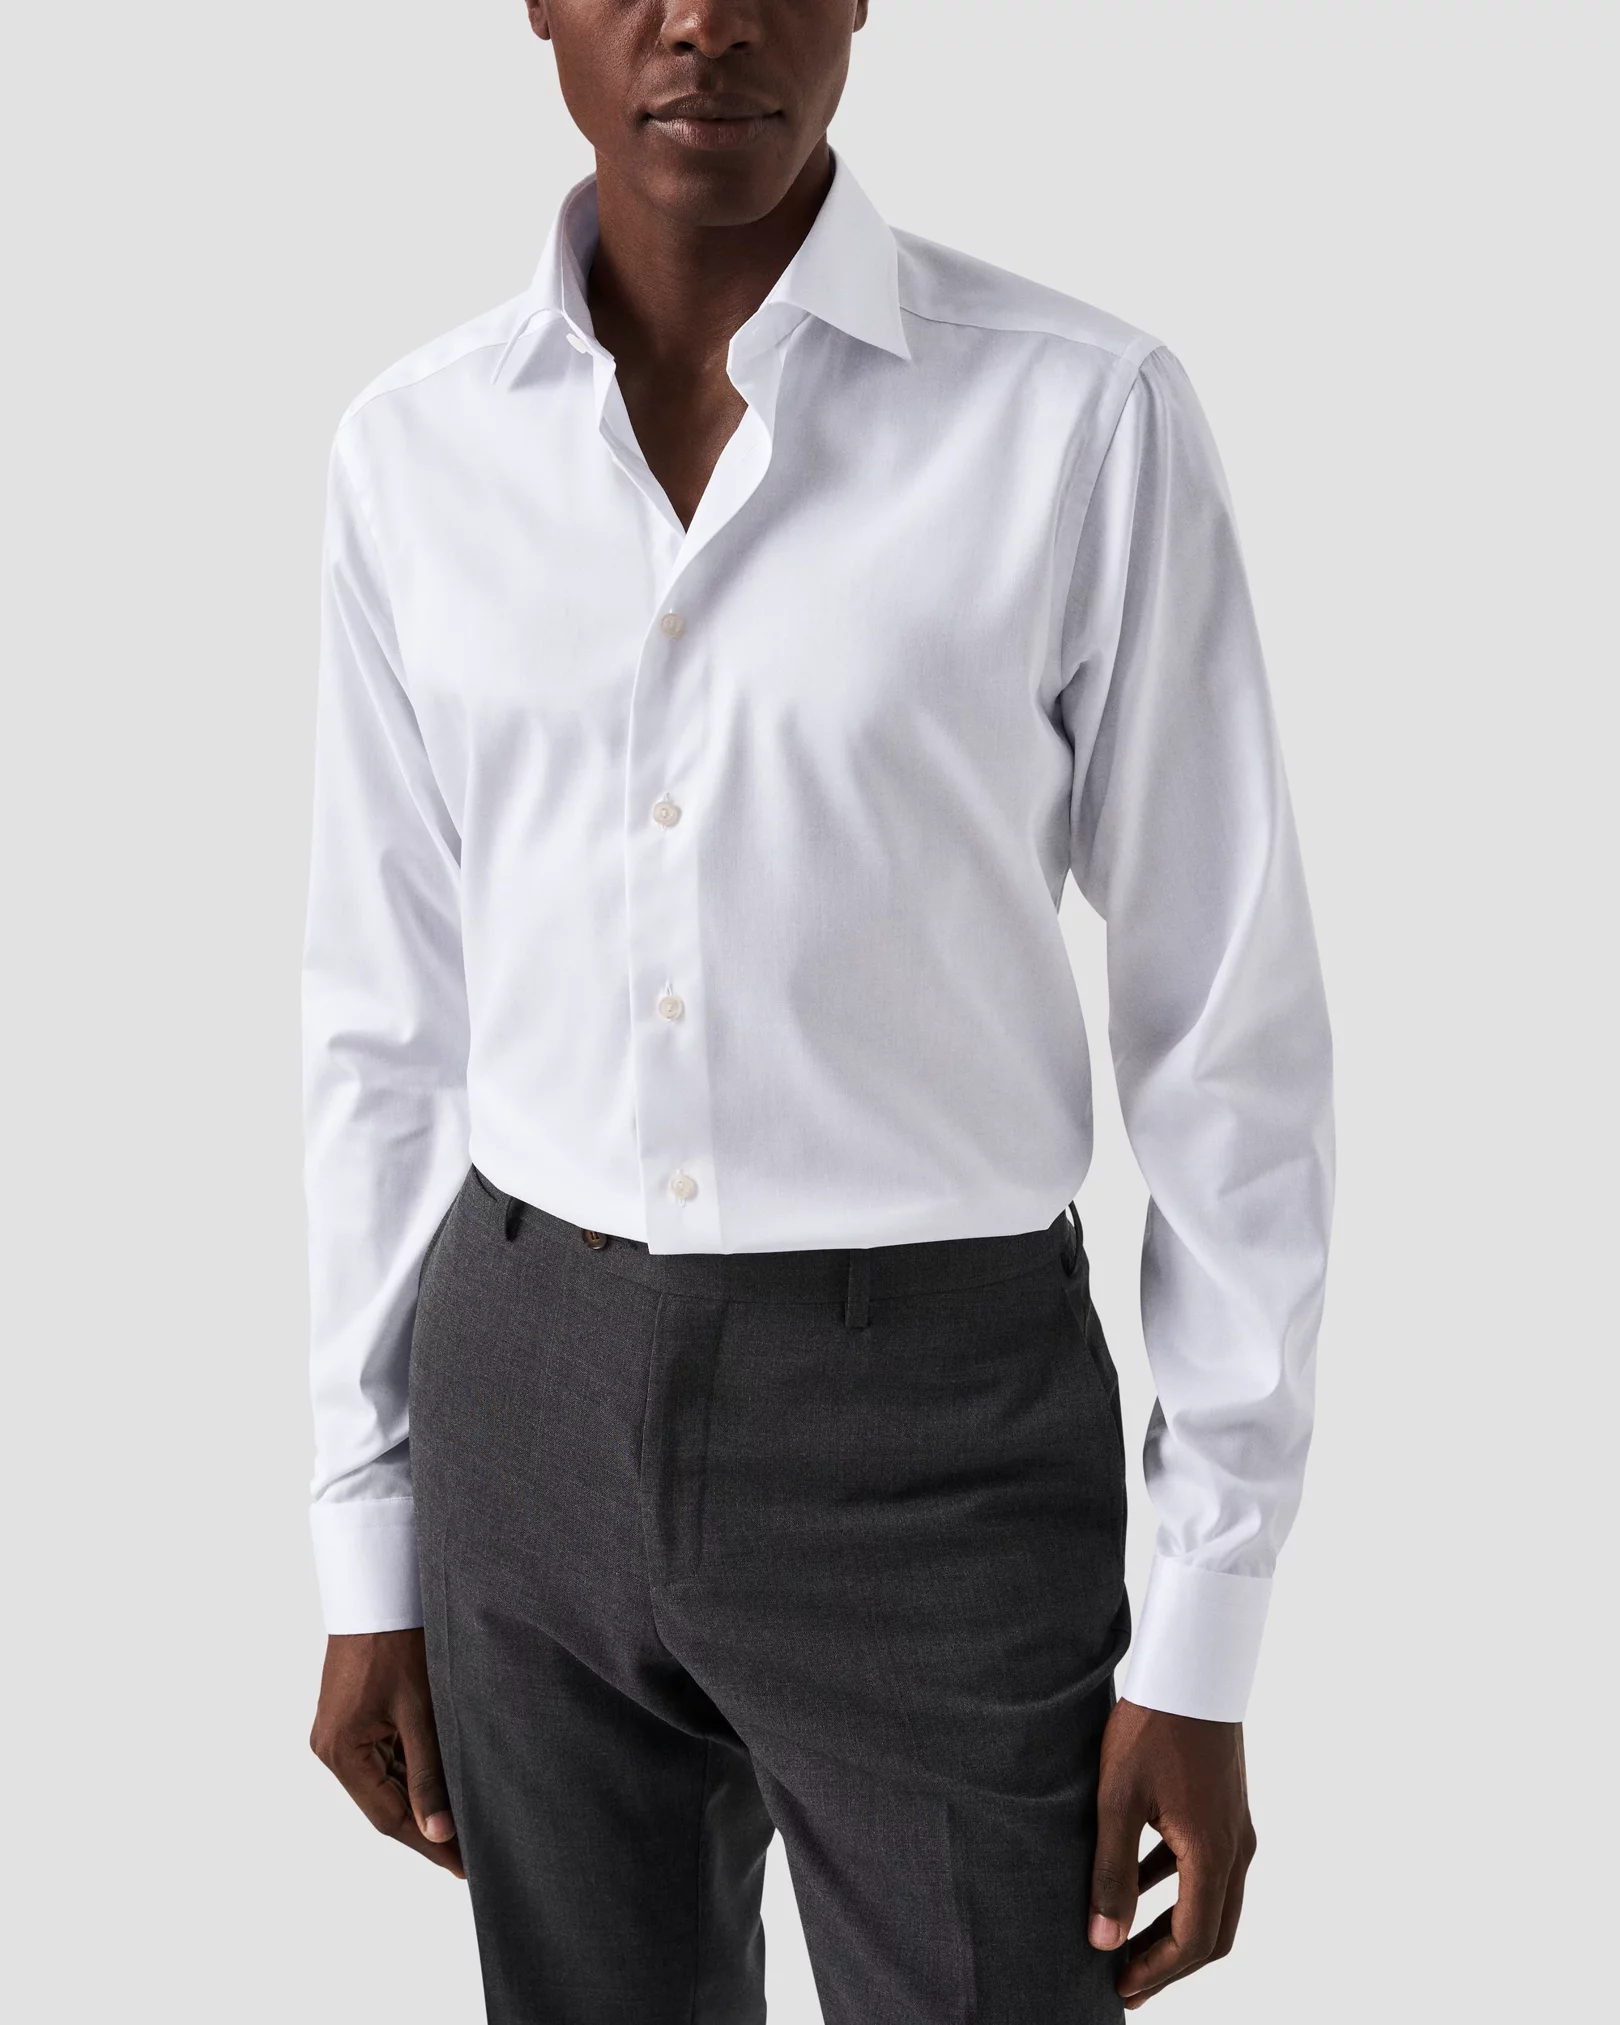 Eton - White Signature Twill Shirt – Extra Long Sleeves